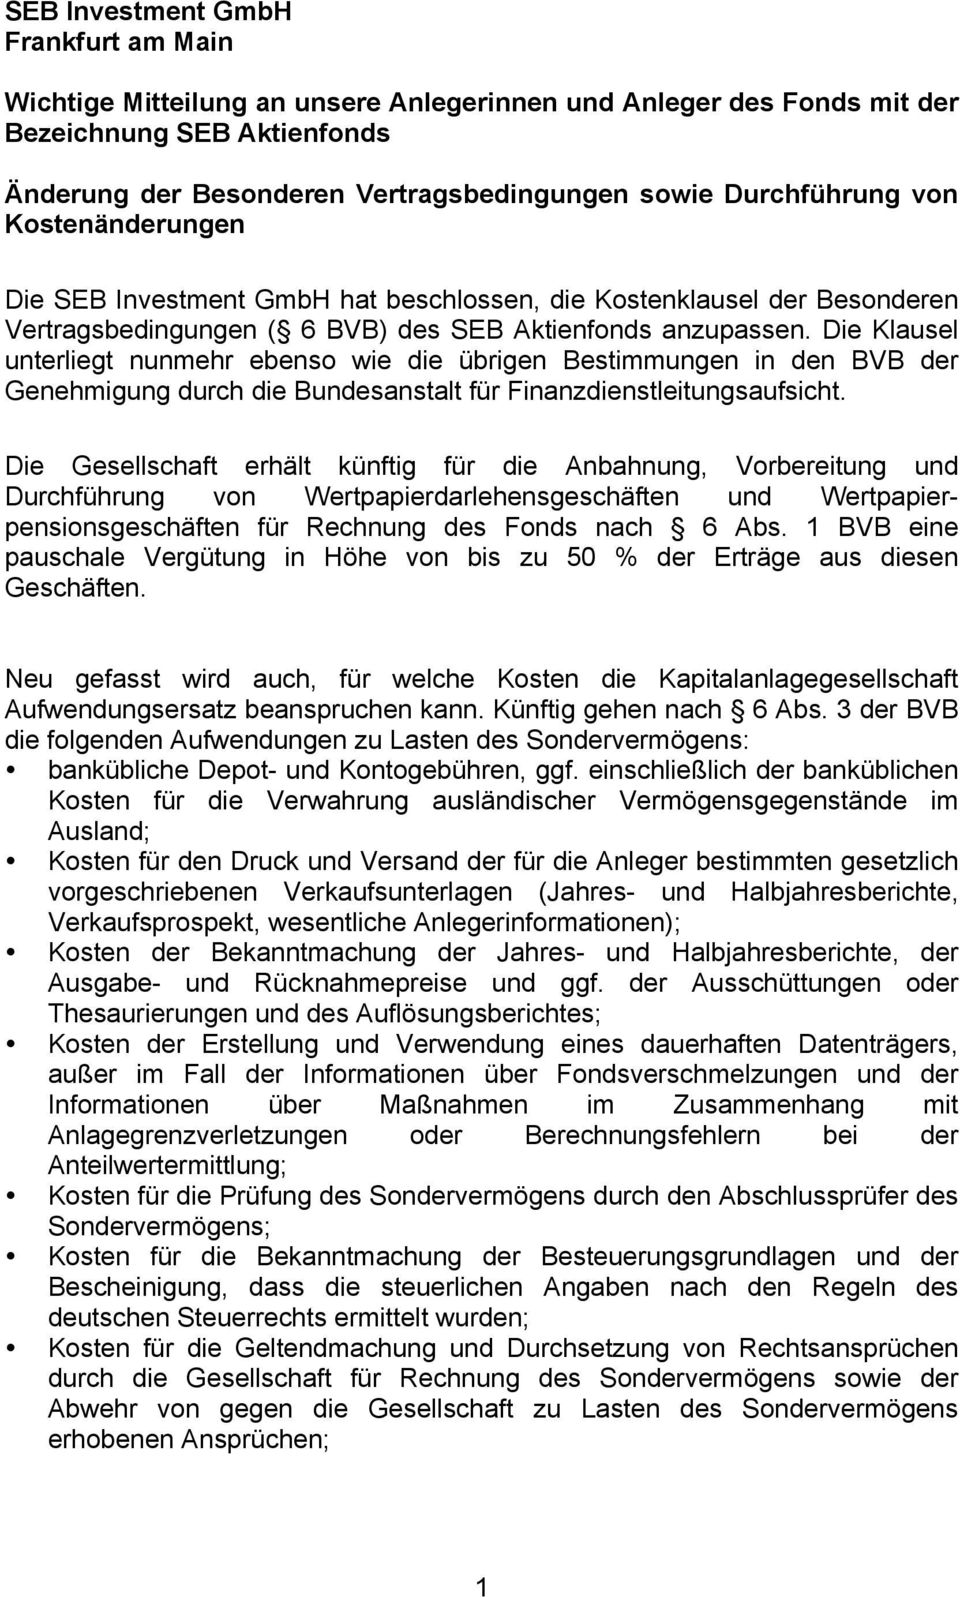 Die Klausel unterliegt nunmehr ebenso wie die übrigen Bestimmungen in den BVB der Genehmigung durch die Bundesanstalt für Finanzdienstleitungsaufsicht.